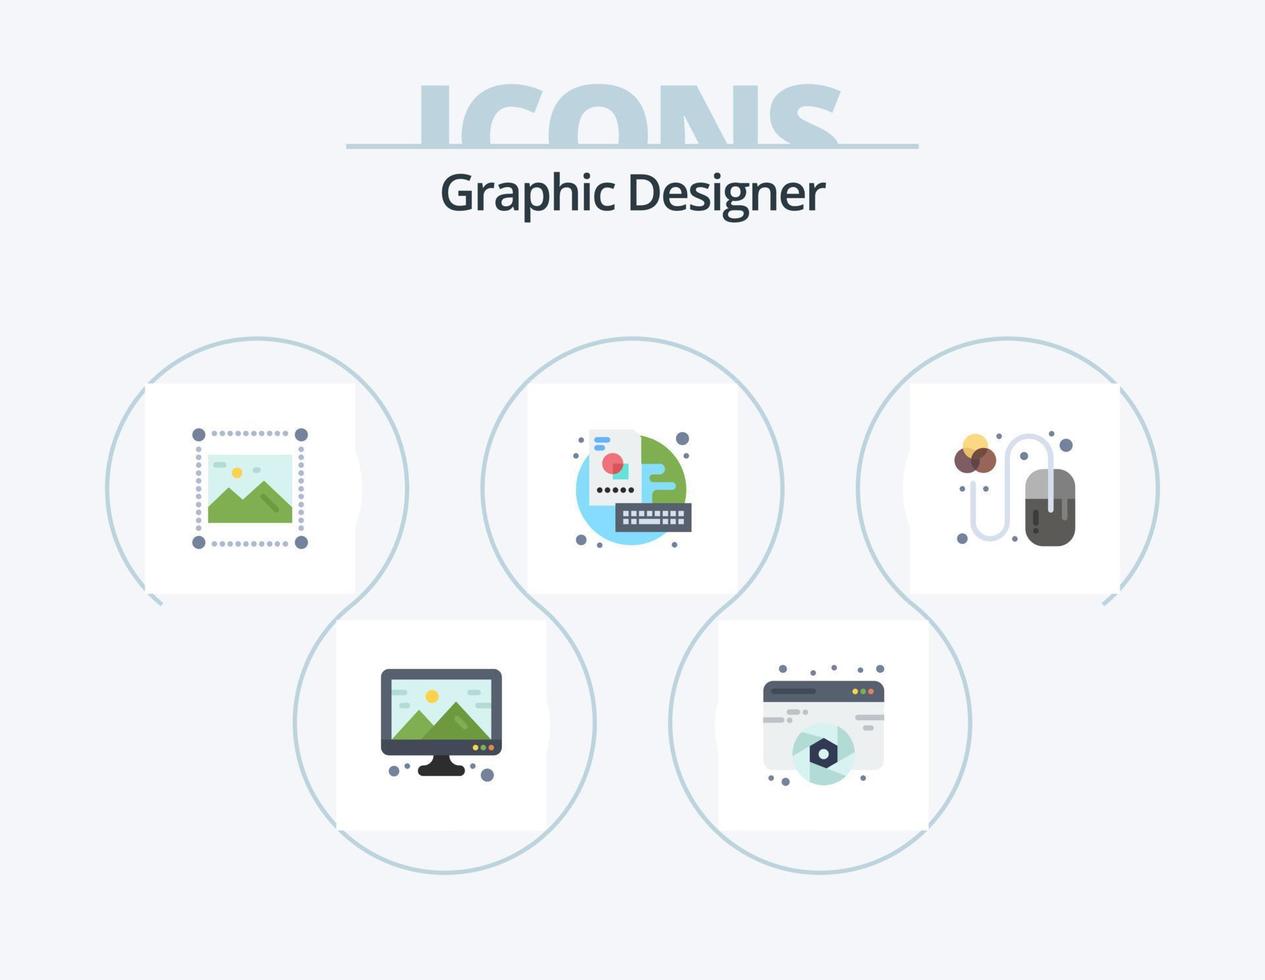 diseñador gráfico paquete de iconos planos 5 diseño de iconos. creativo. llave. web. junta. gráficos vector